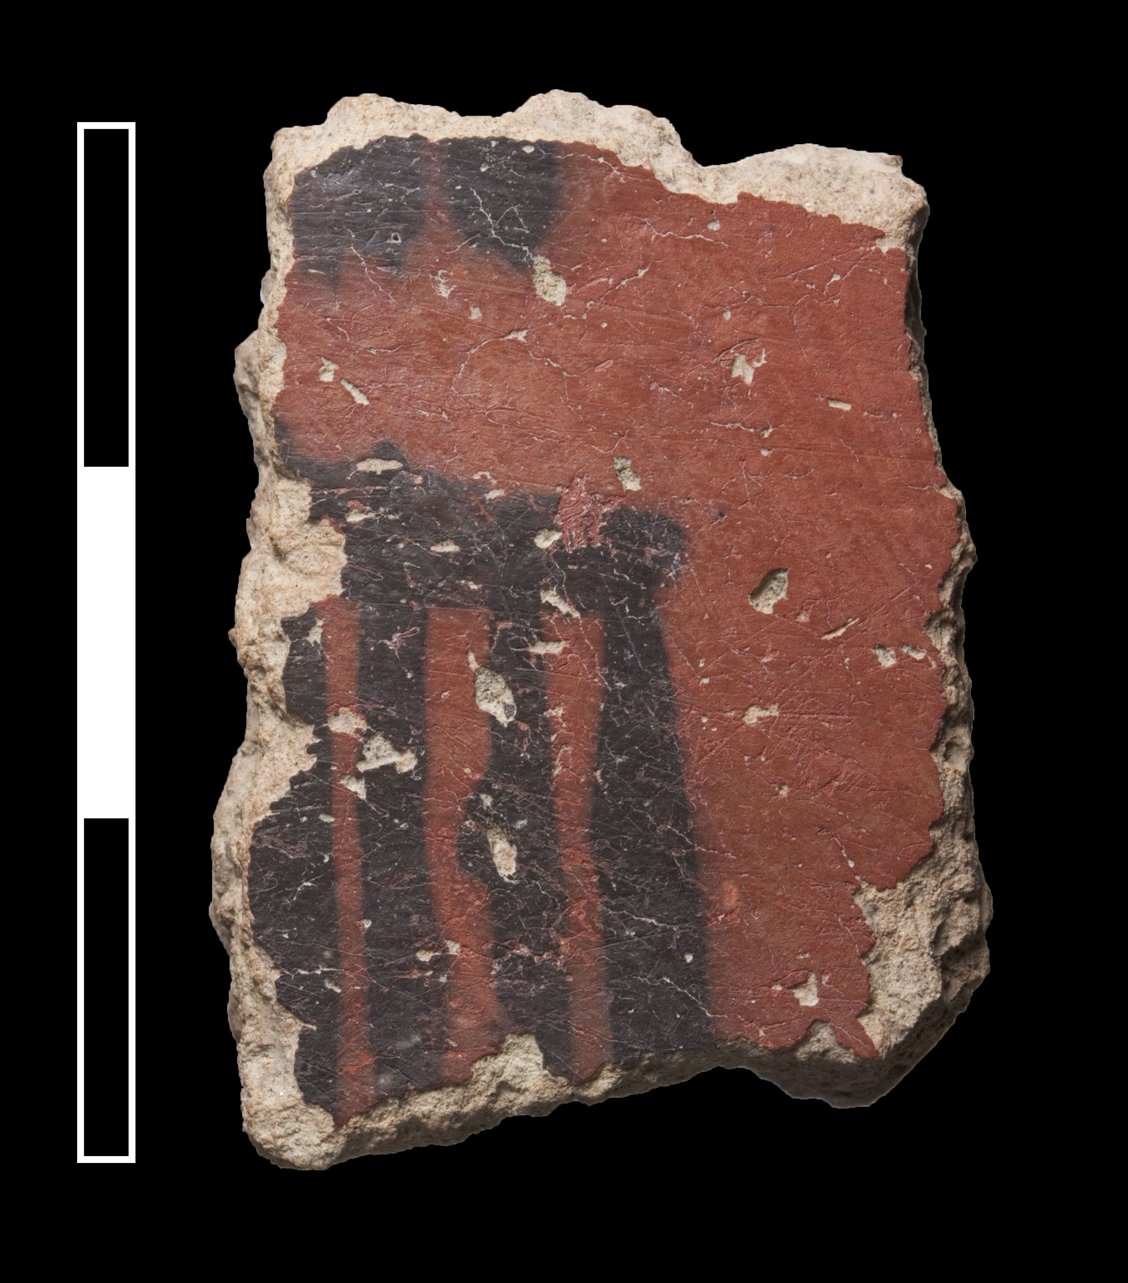 Scherbe der Neolithic Black on Red Ware. Diese Keramikware kommt in Monjukli Depe nur selten vor und wird meist in späteren Kontexten (Meana Horizont) gefunden.